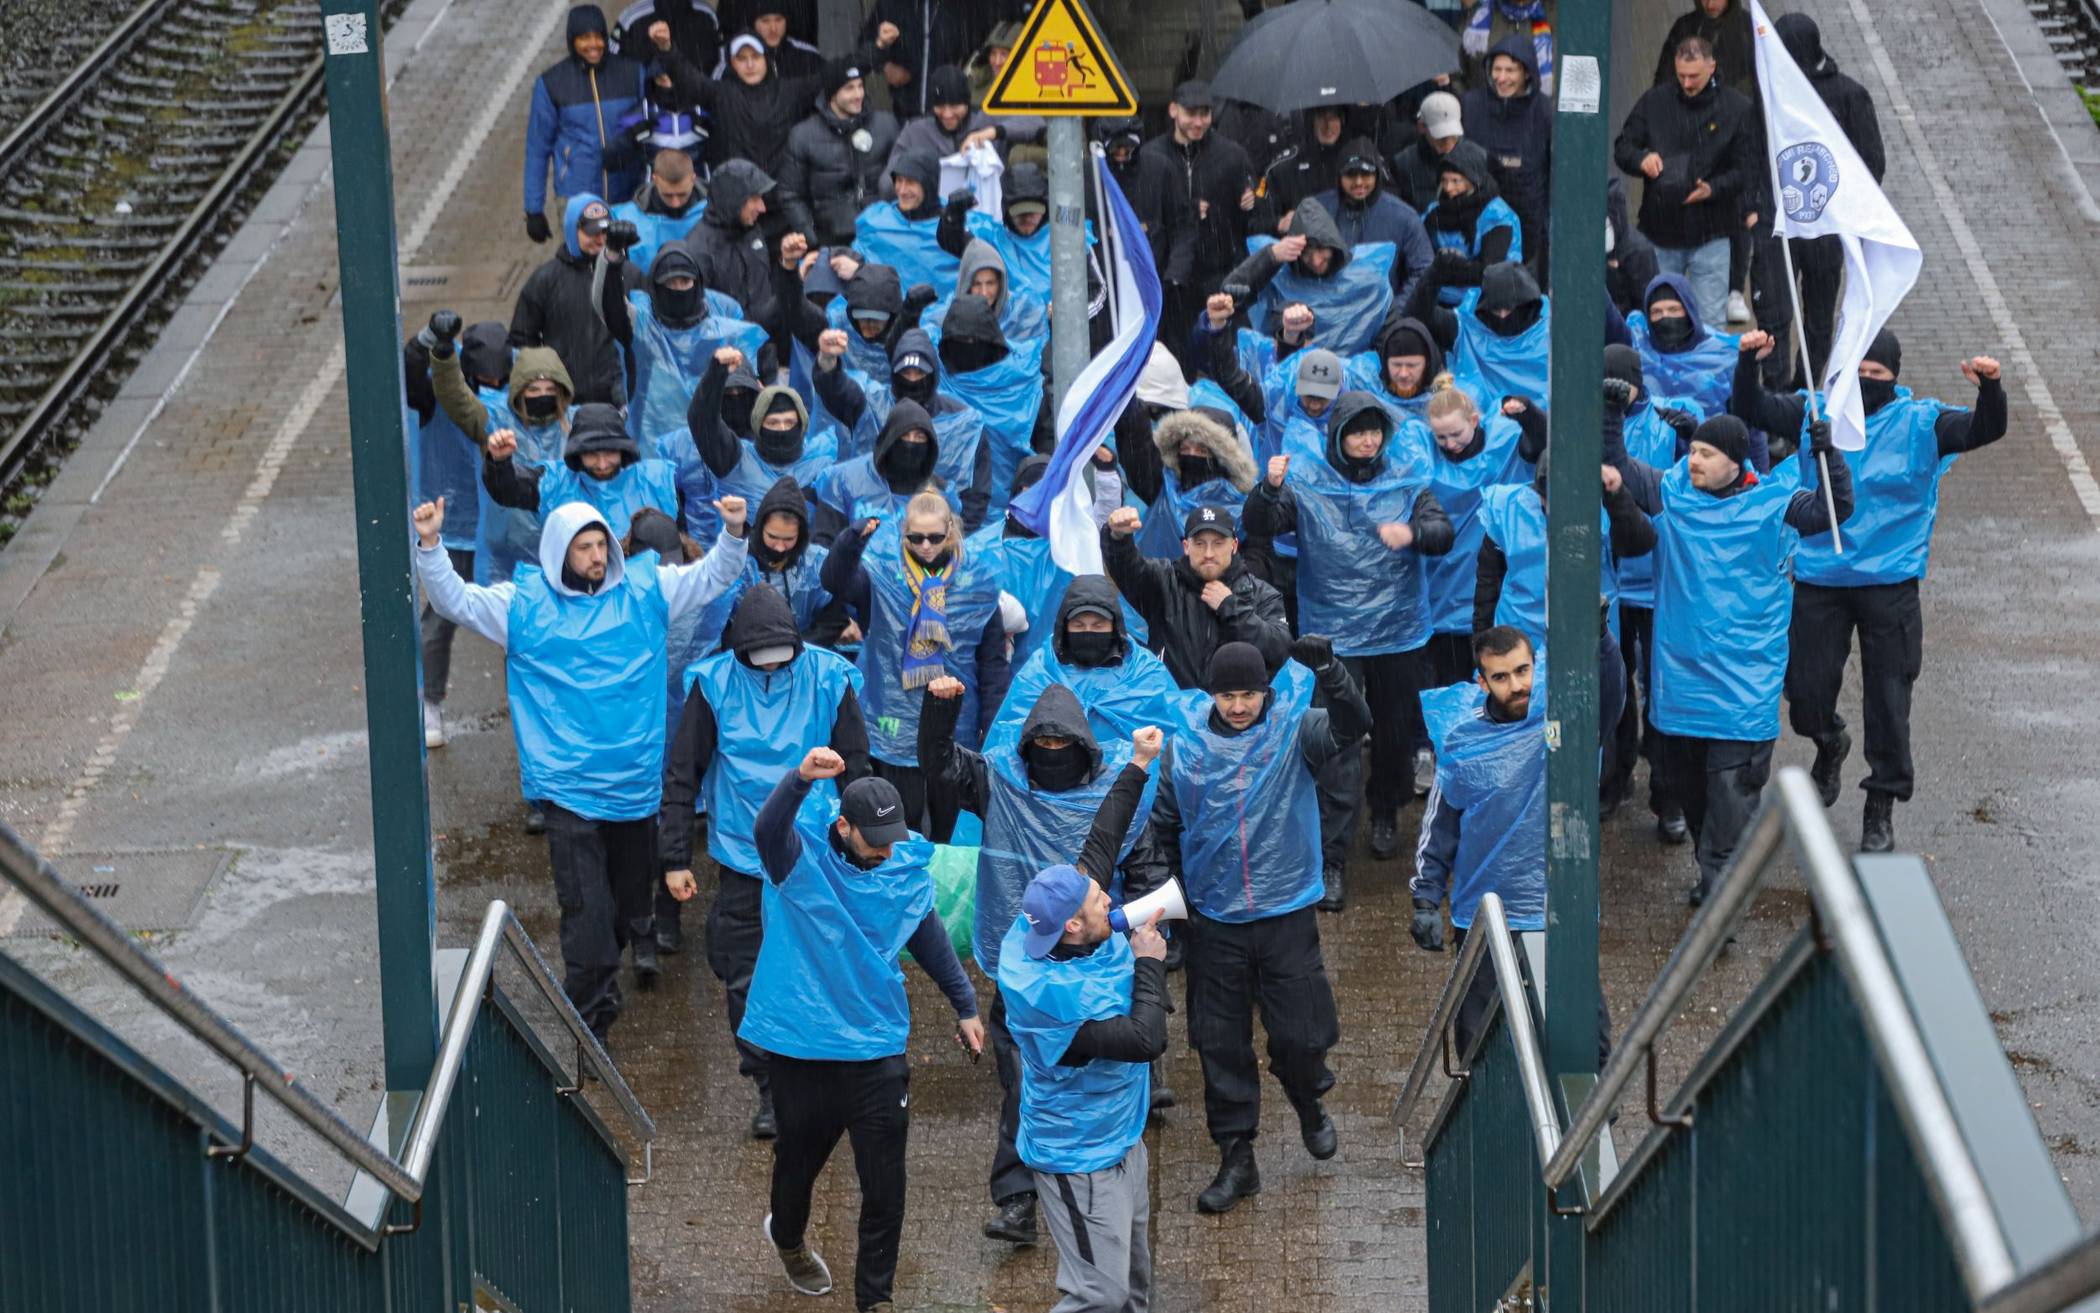 Bilder: Polizei-Übung in Wuppertal zur Fußball-EM 2024​